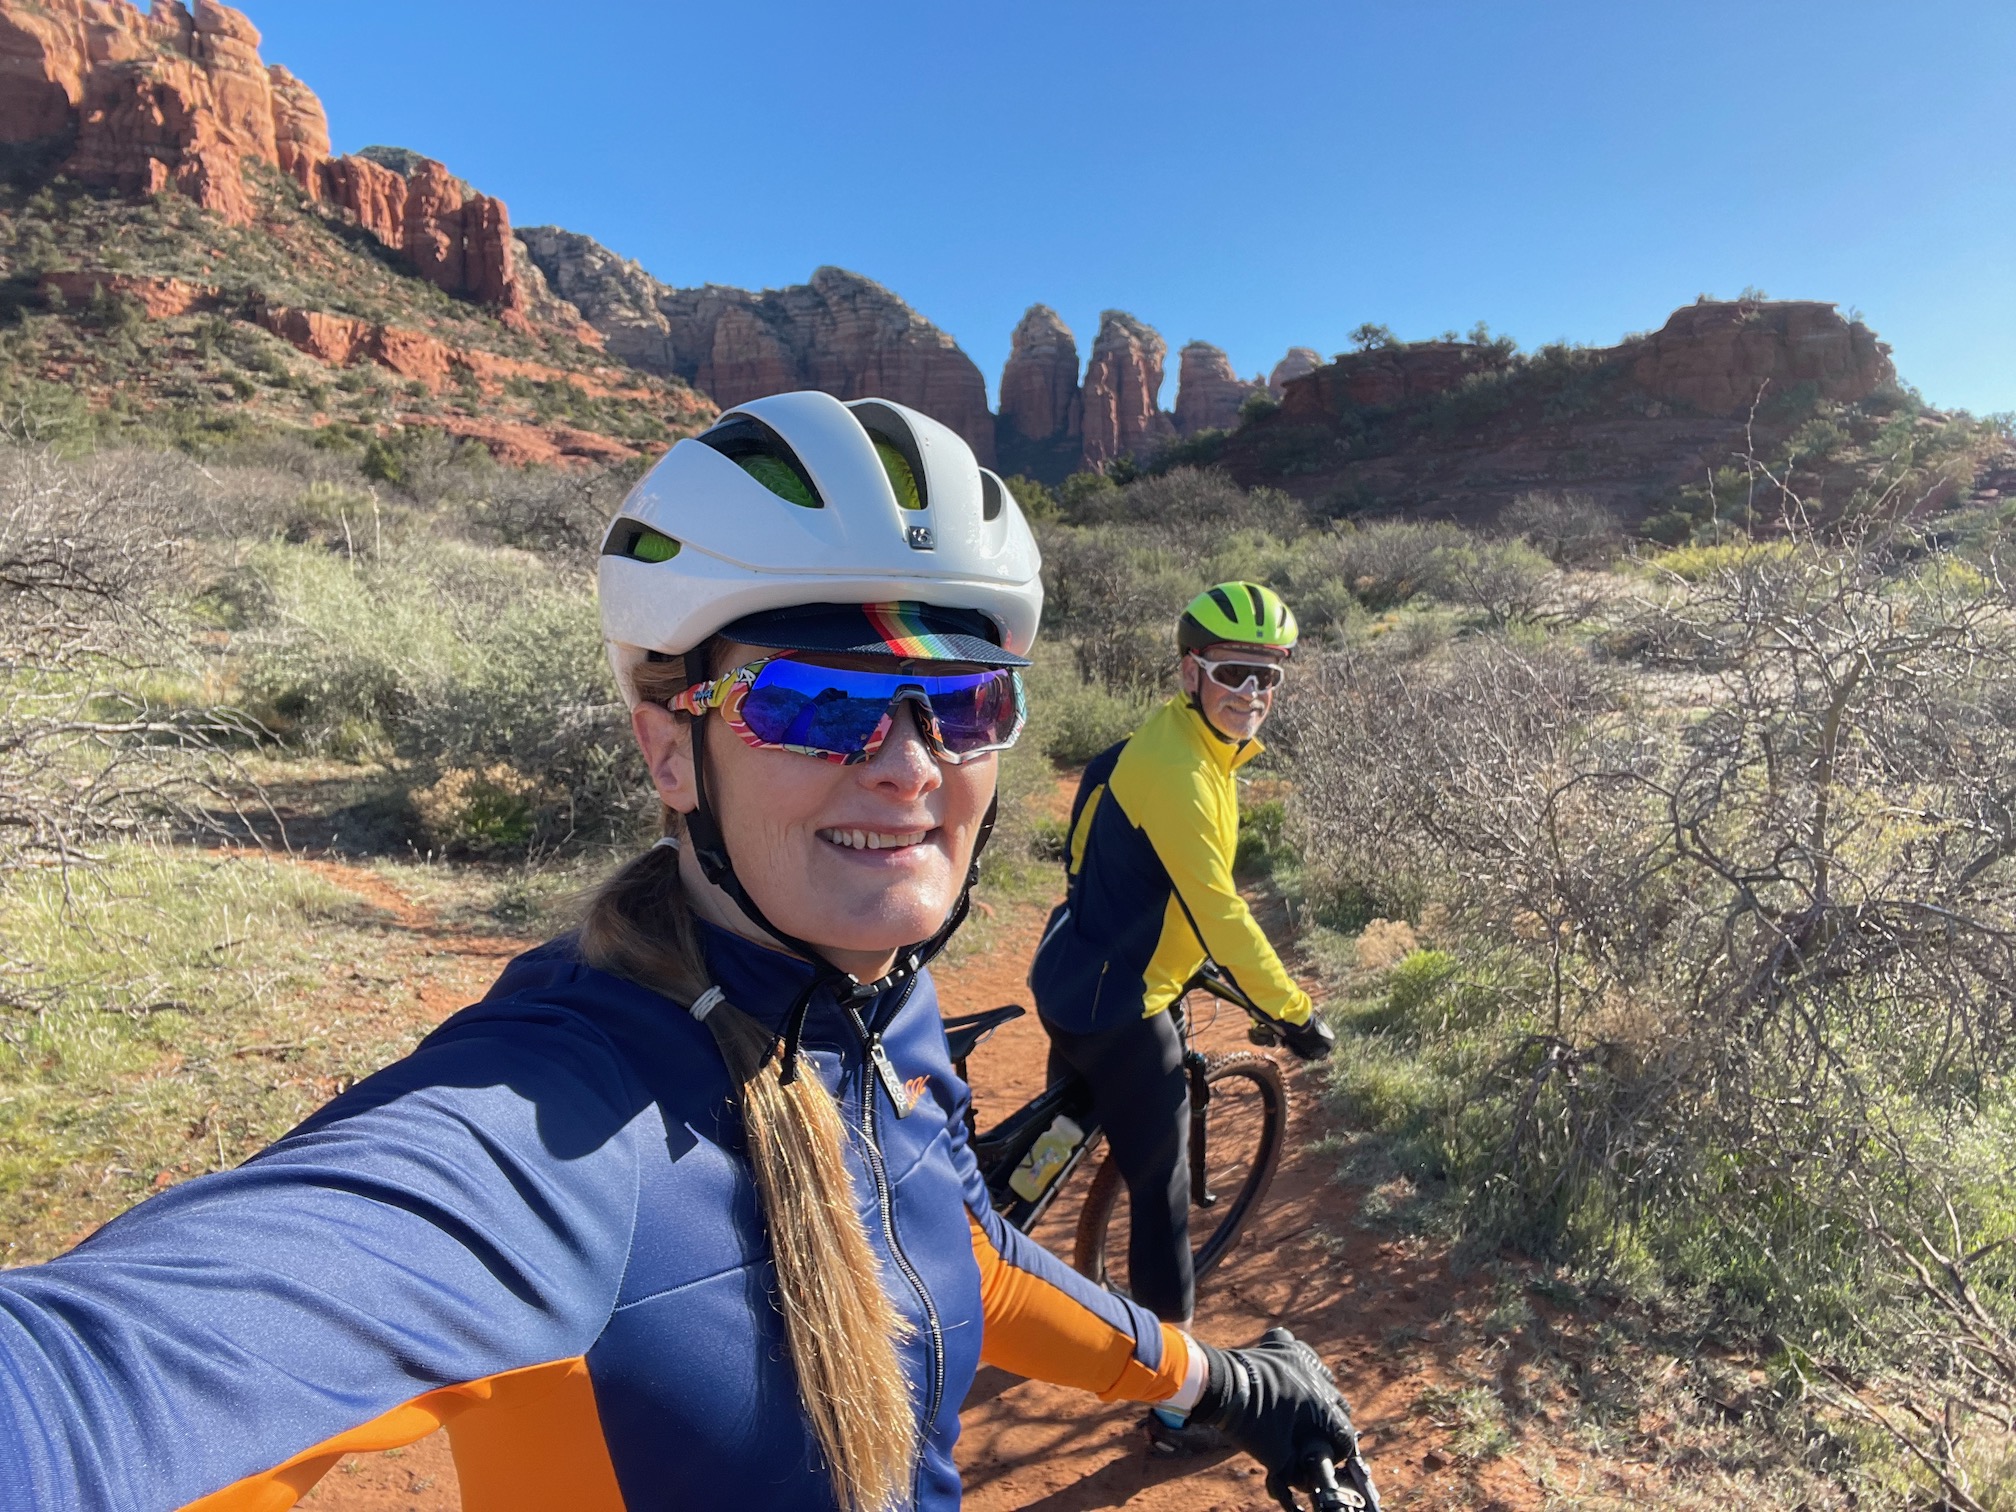 tracey & hunter biking in sedona desert